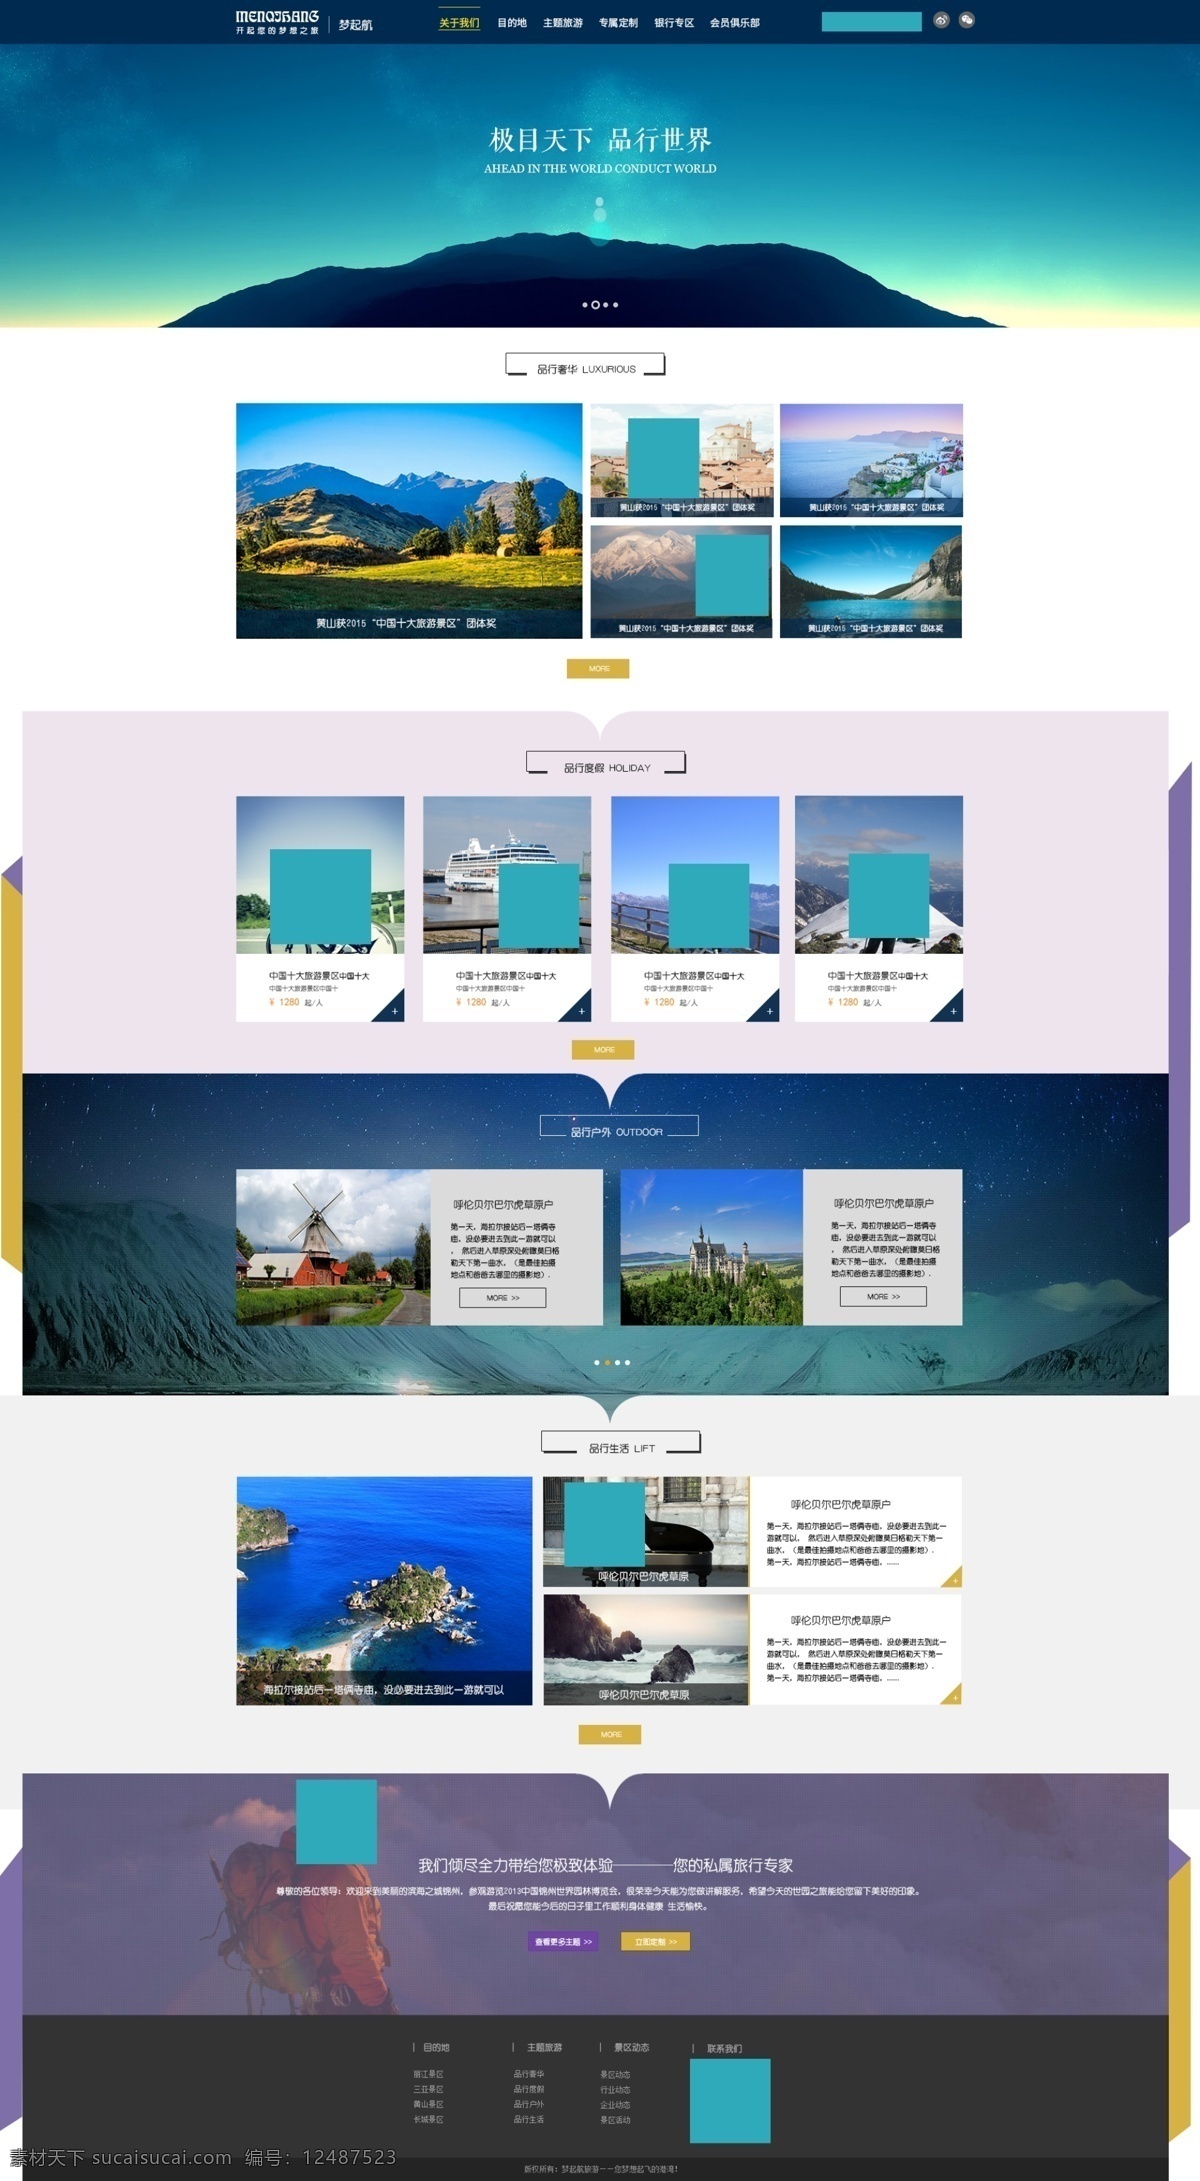 旅游公司网页 网页设计 自然风景 蓝色网站 旅游景点 旅游网页设计